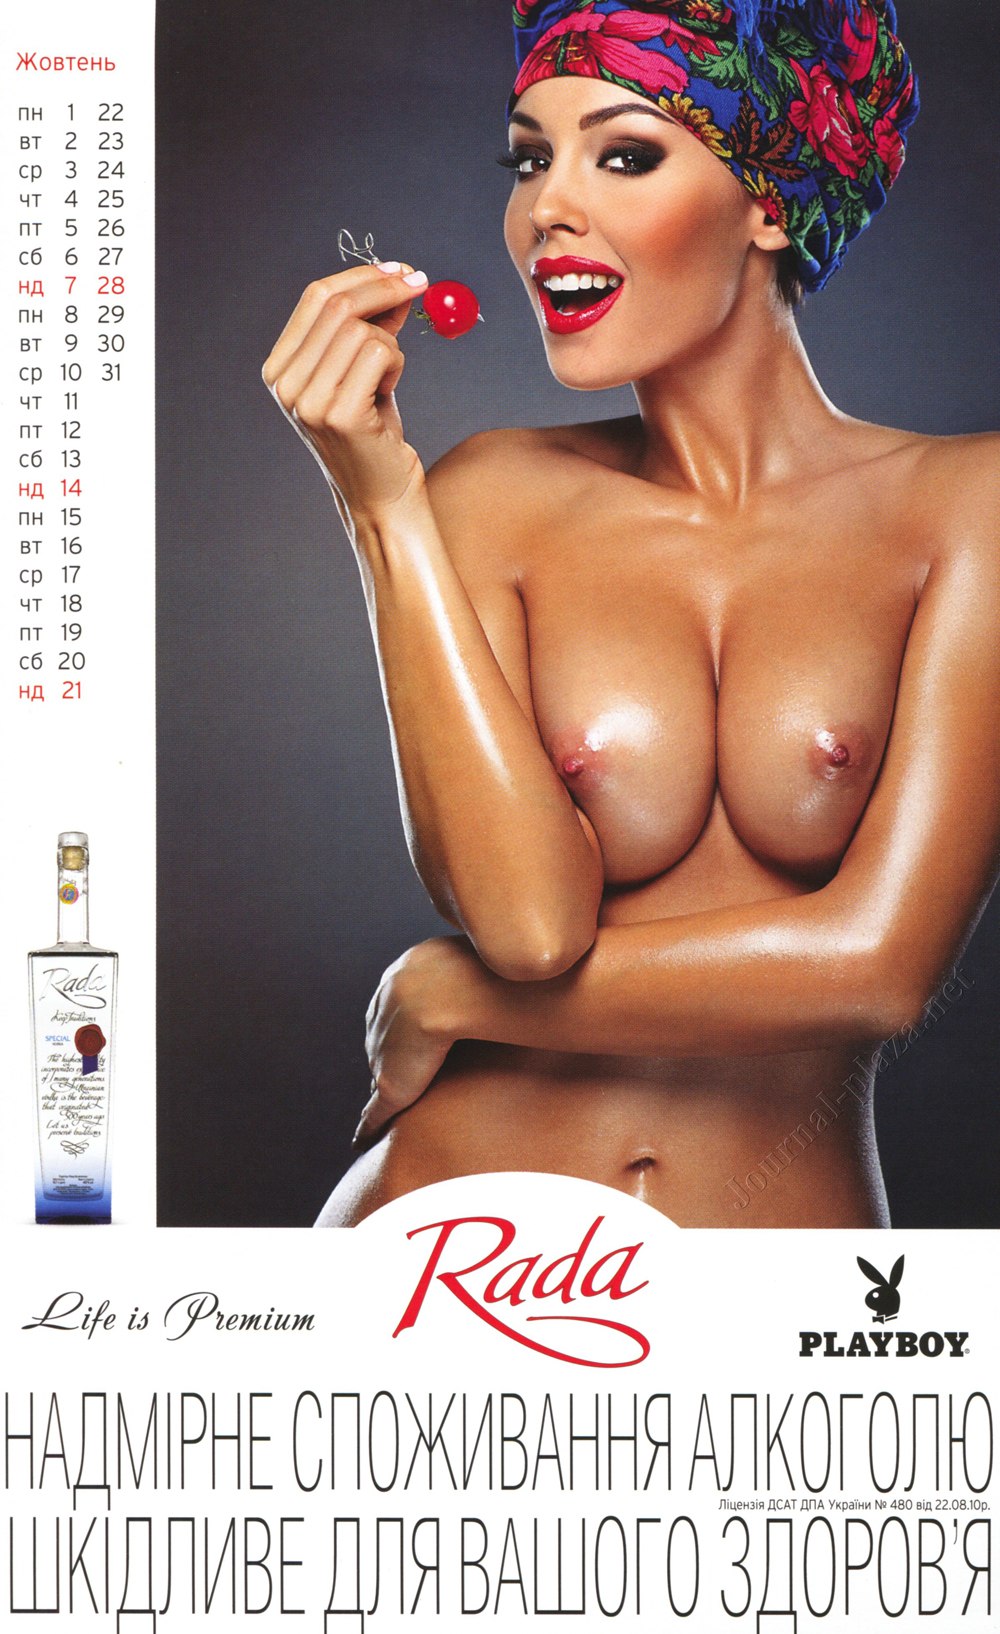 Украинский Playboy-календарь на 2012 год